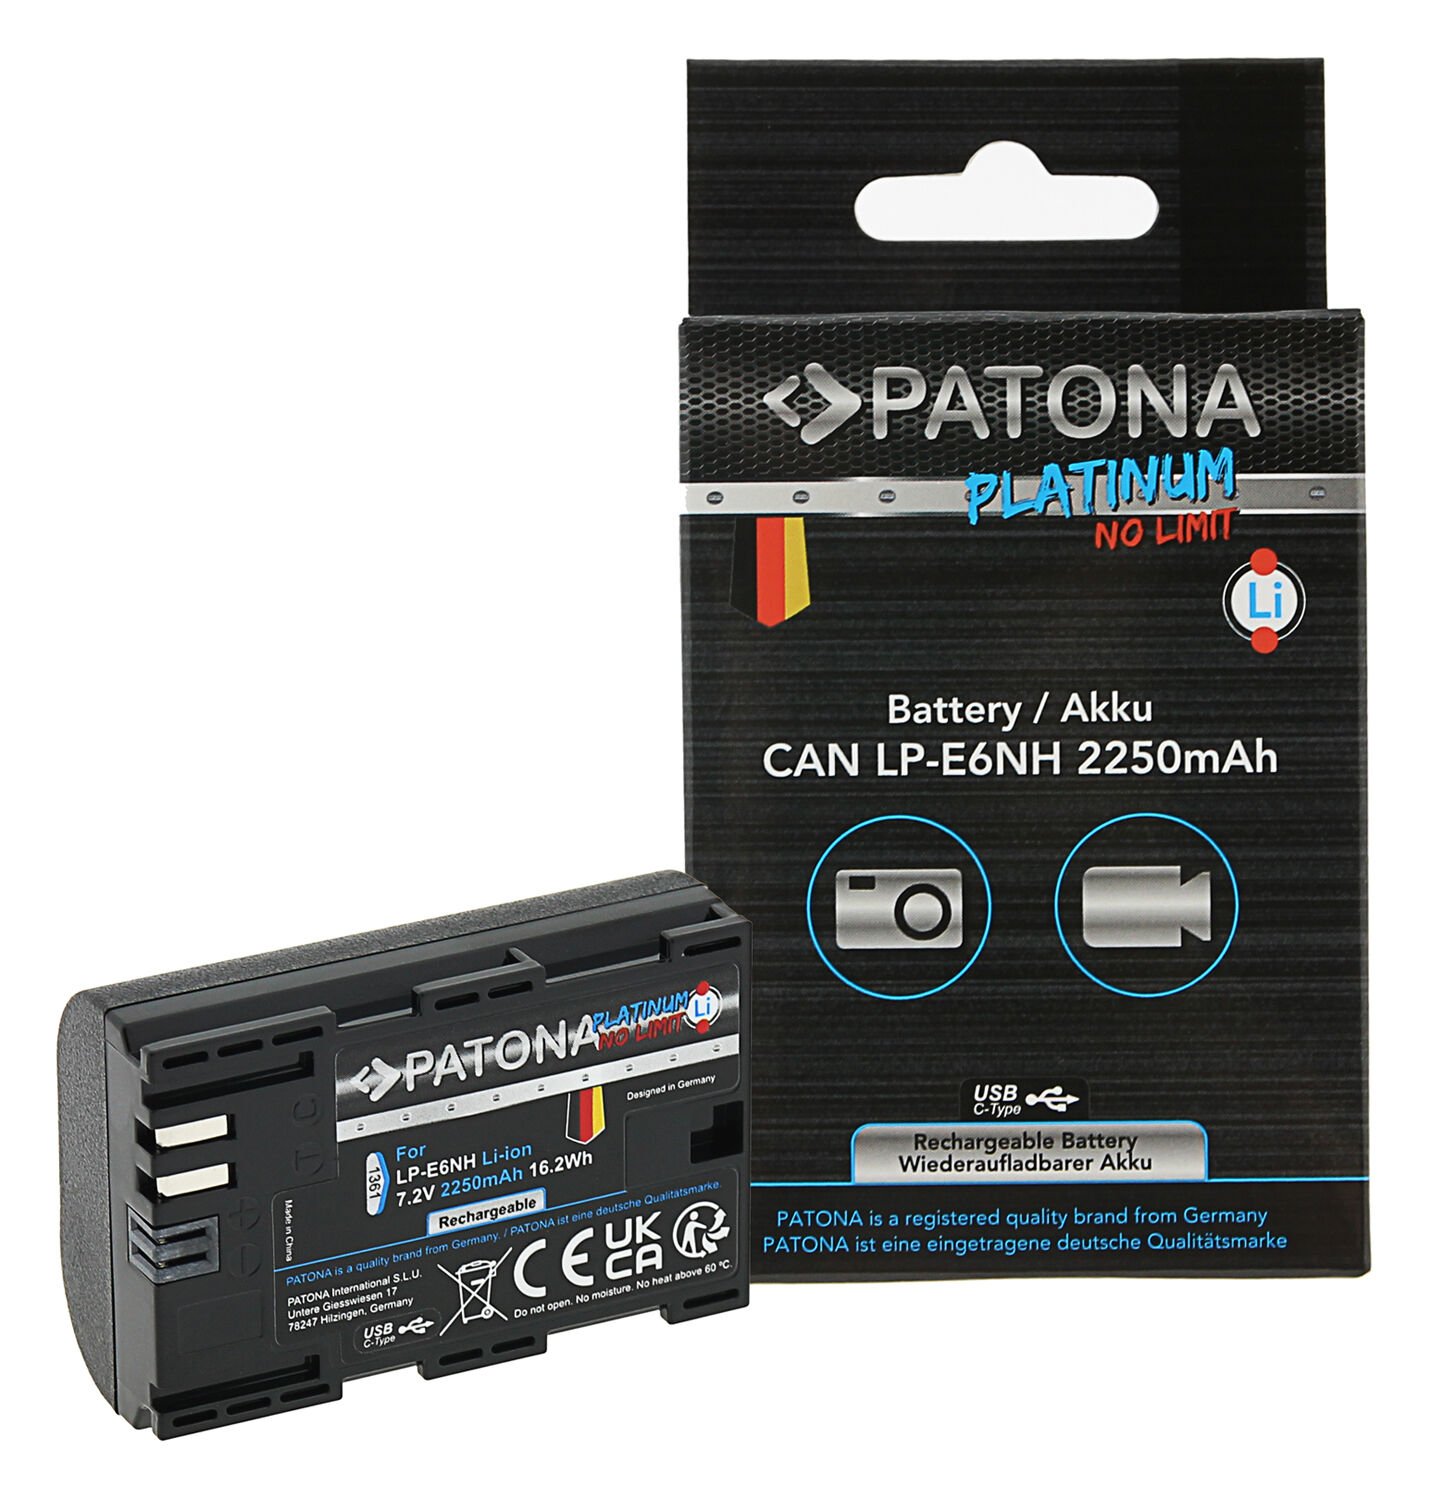 Patona Platinum Canon Lp-6NH Usb-C Batarya 1361